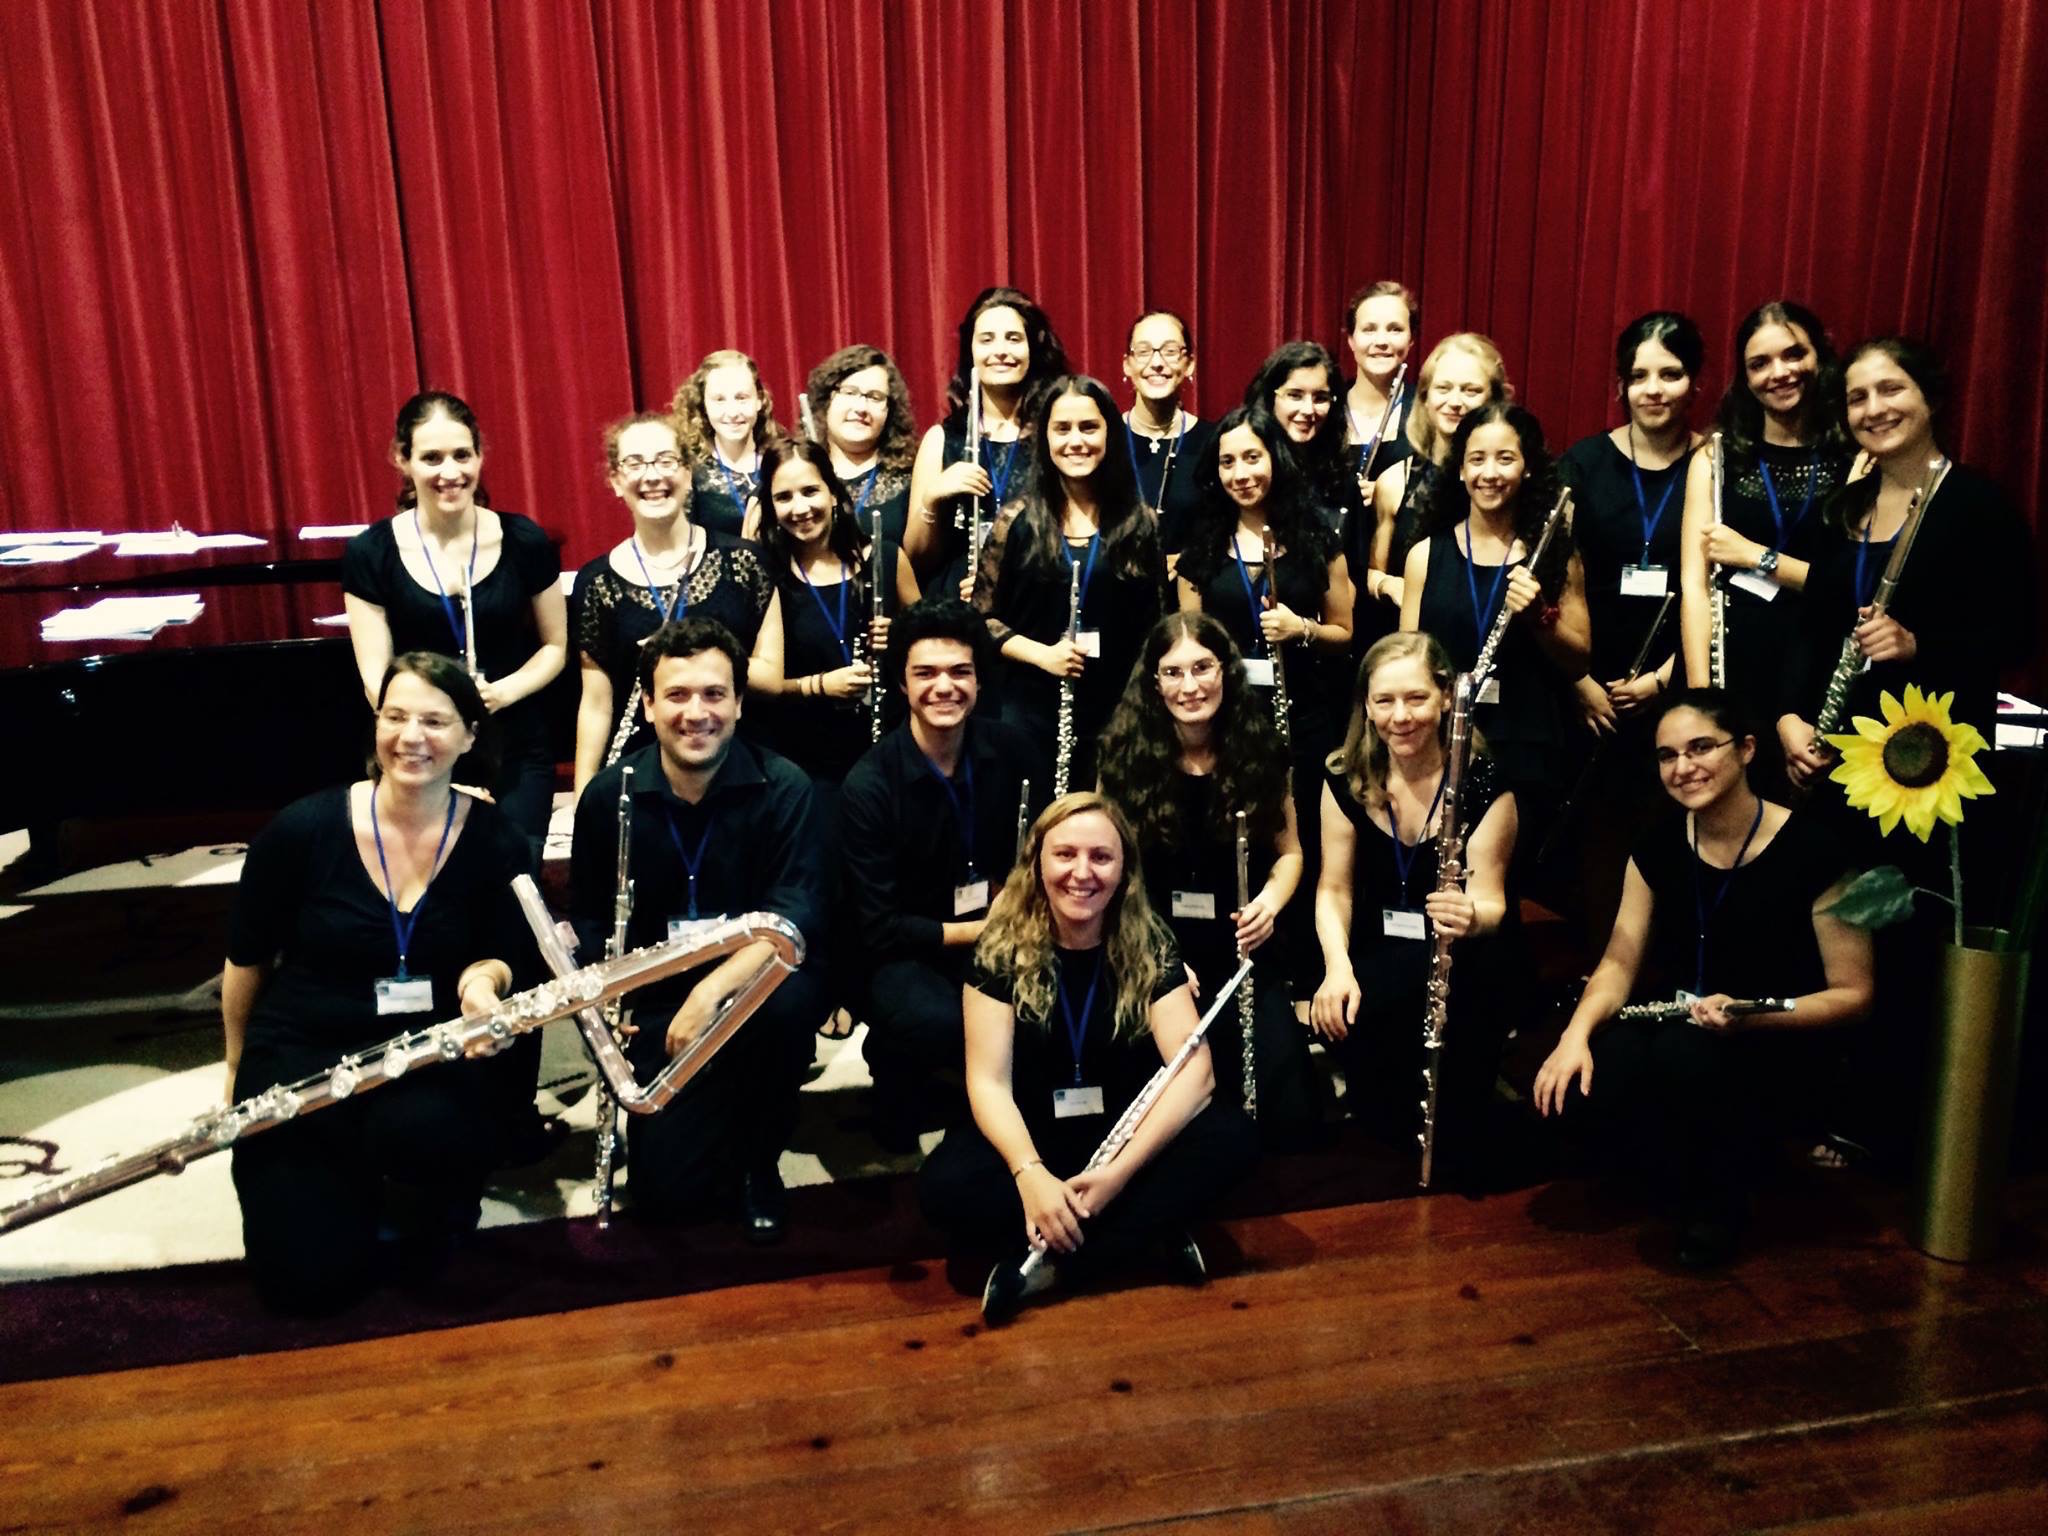  3ª  Academia de Flauta de Verão  (Summer Flute Academy) - group photo after final concert. WHAT A WEEK! An amazing group! 